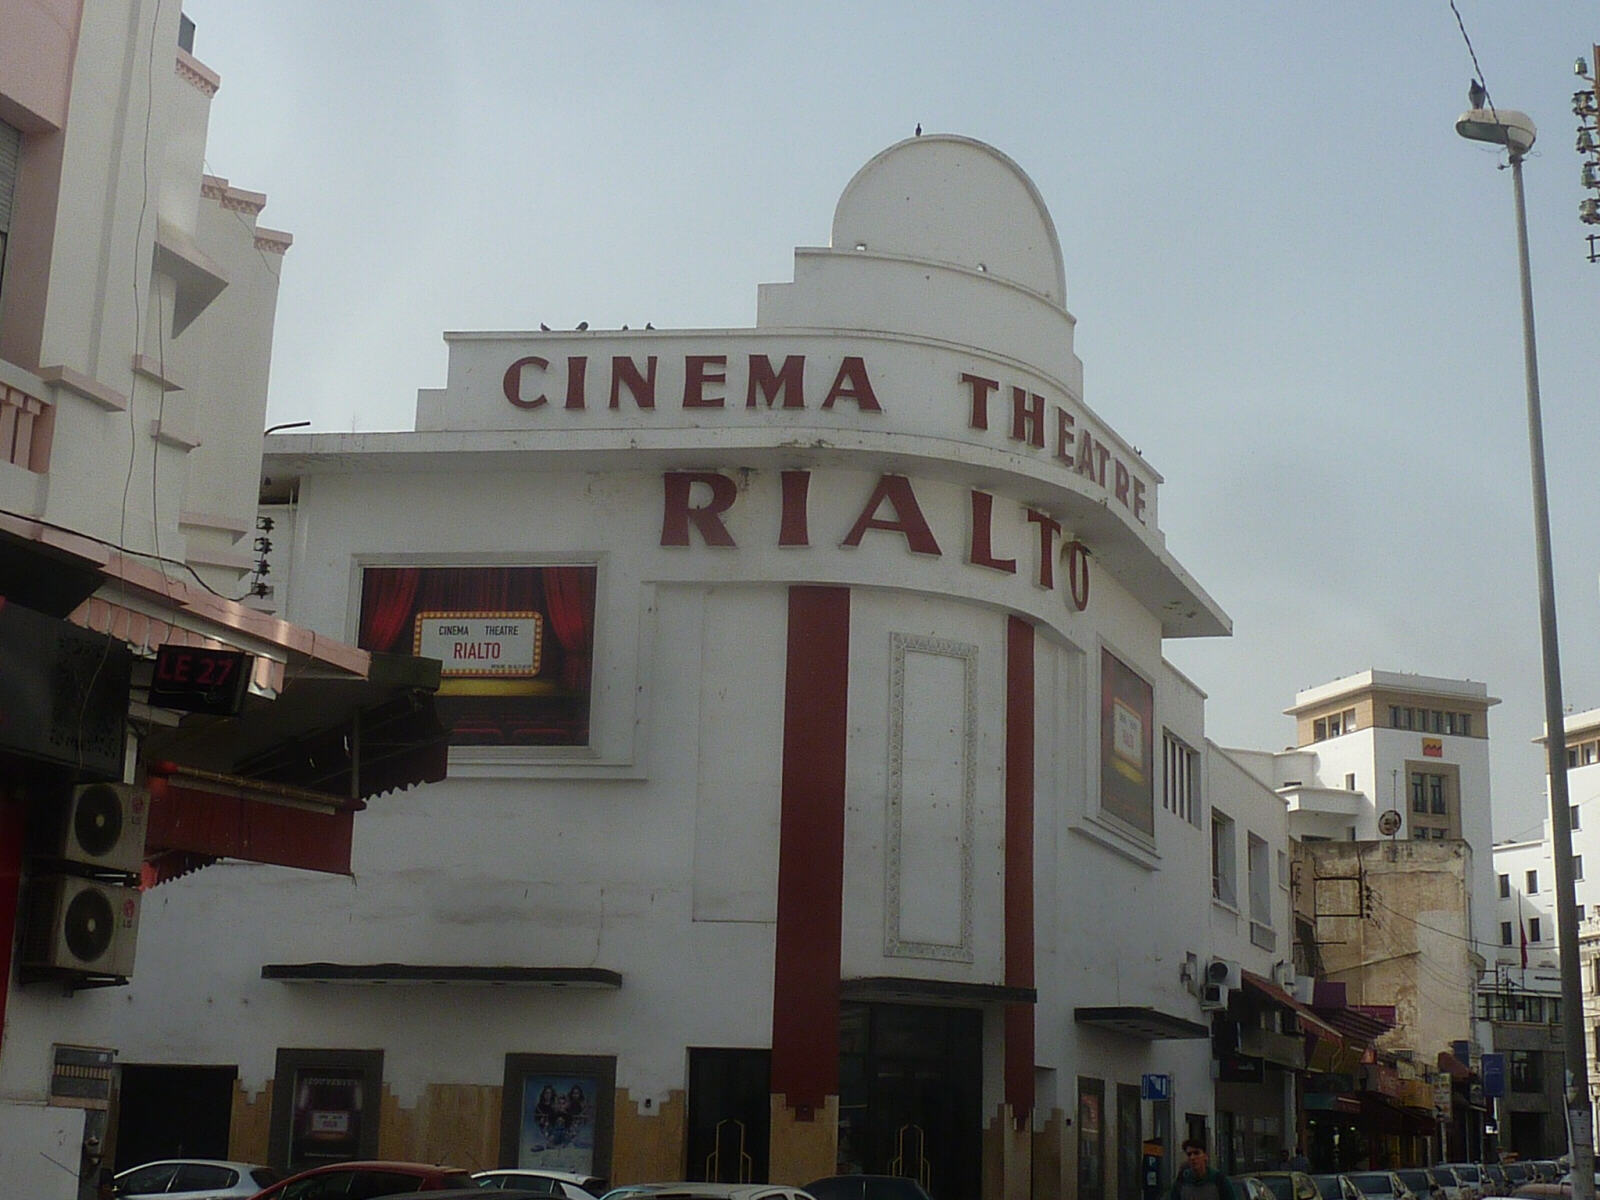 The Rialto cinema in Casablanca